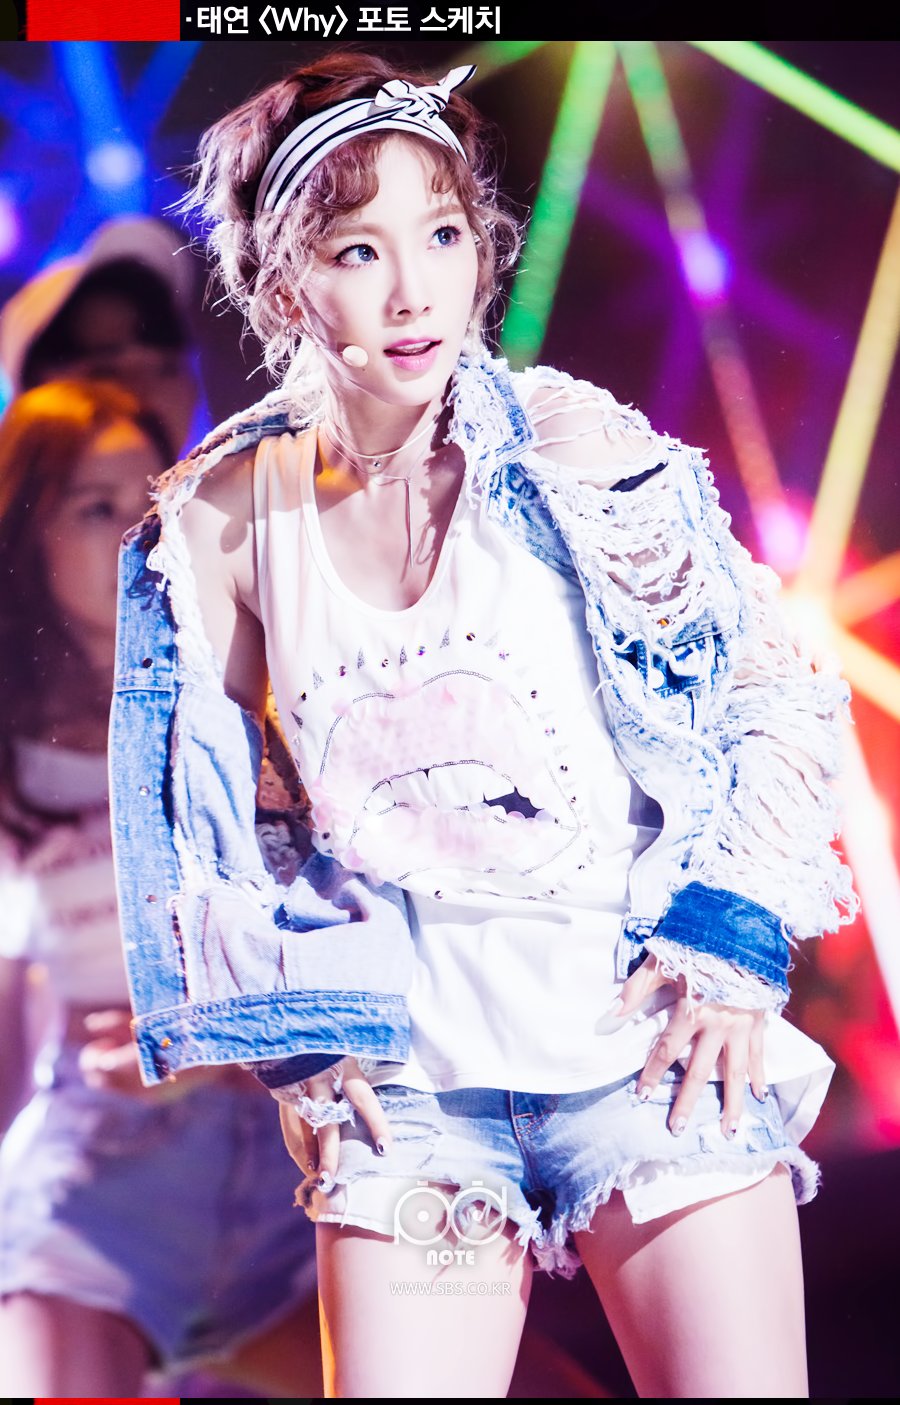 [PIC][01-07-2016]Hình ảnh mới nhất từ các sân khấu Comeback cho Mini Album "WHY" của TaeYeon IczdO_hNv4-3000x3000